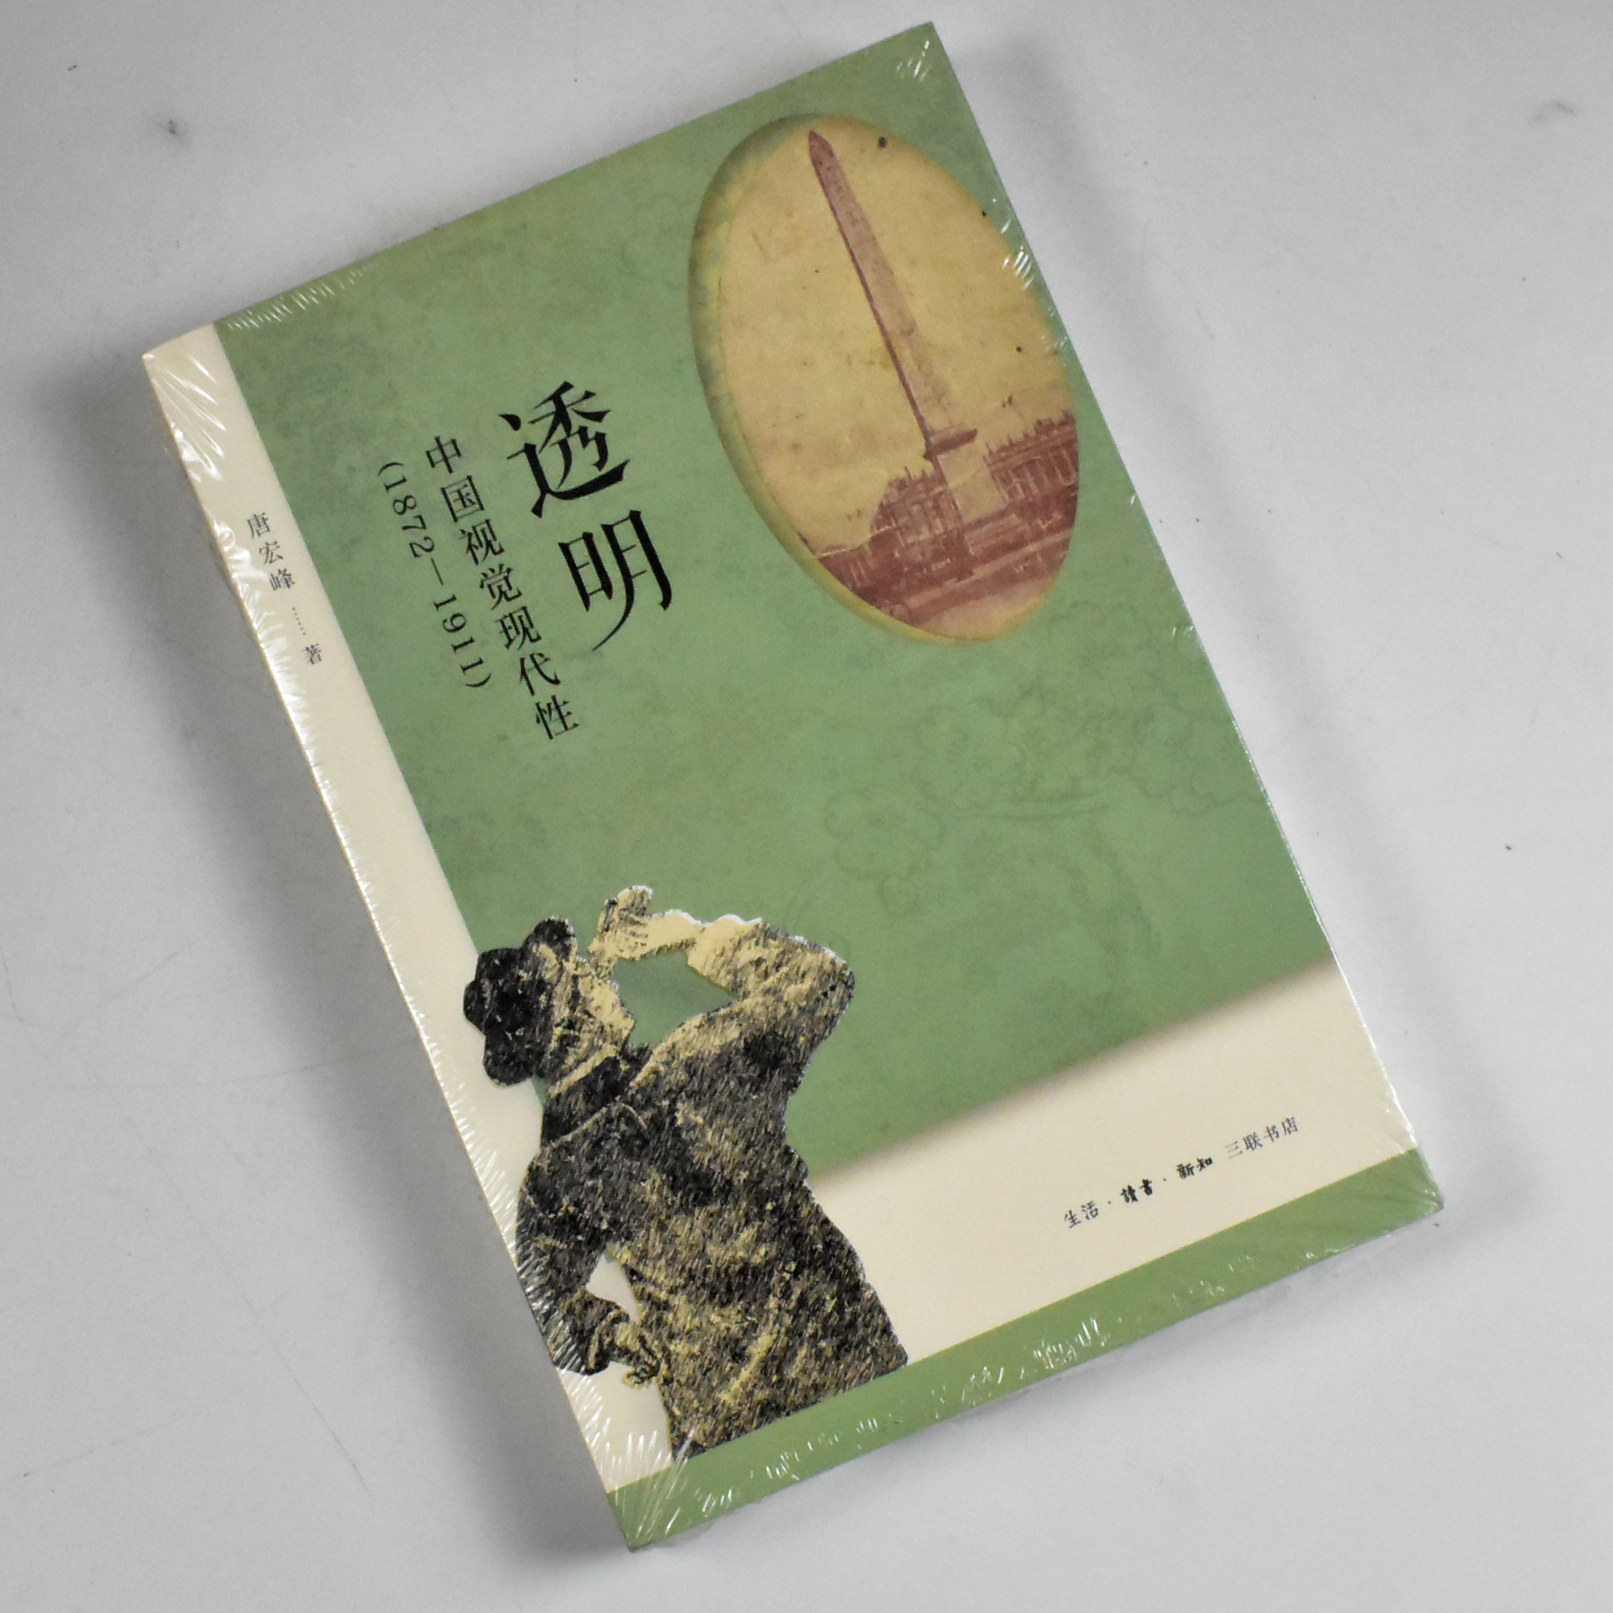 透明: 中国视觉现代性（1872—1911） 正版全新作者: 唐宏峰 出版社: 生活·读书·新知三联书店 9787108071521